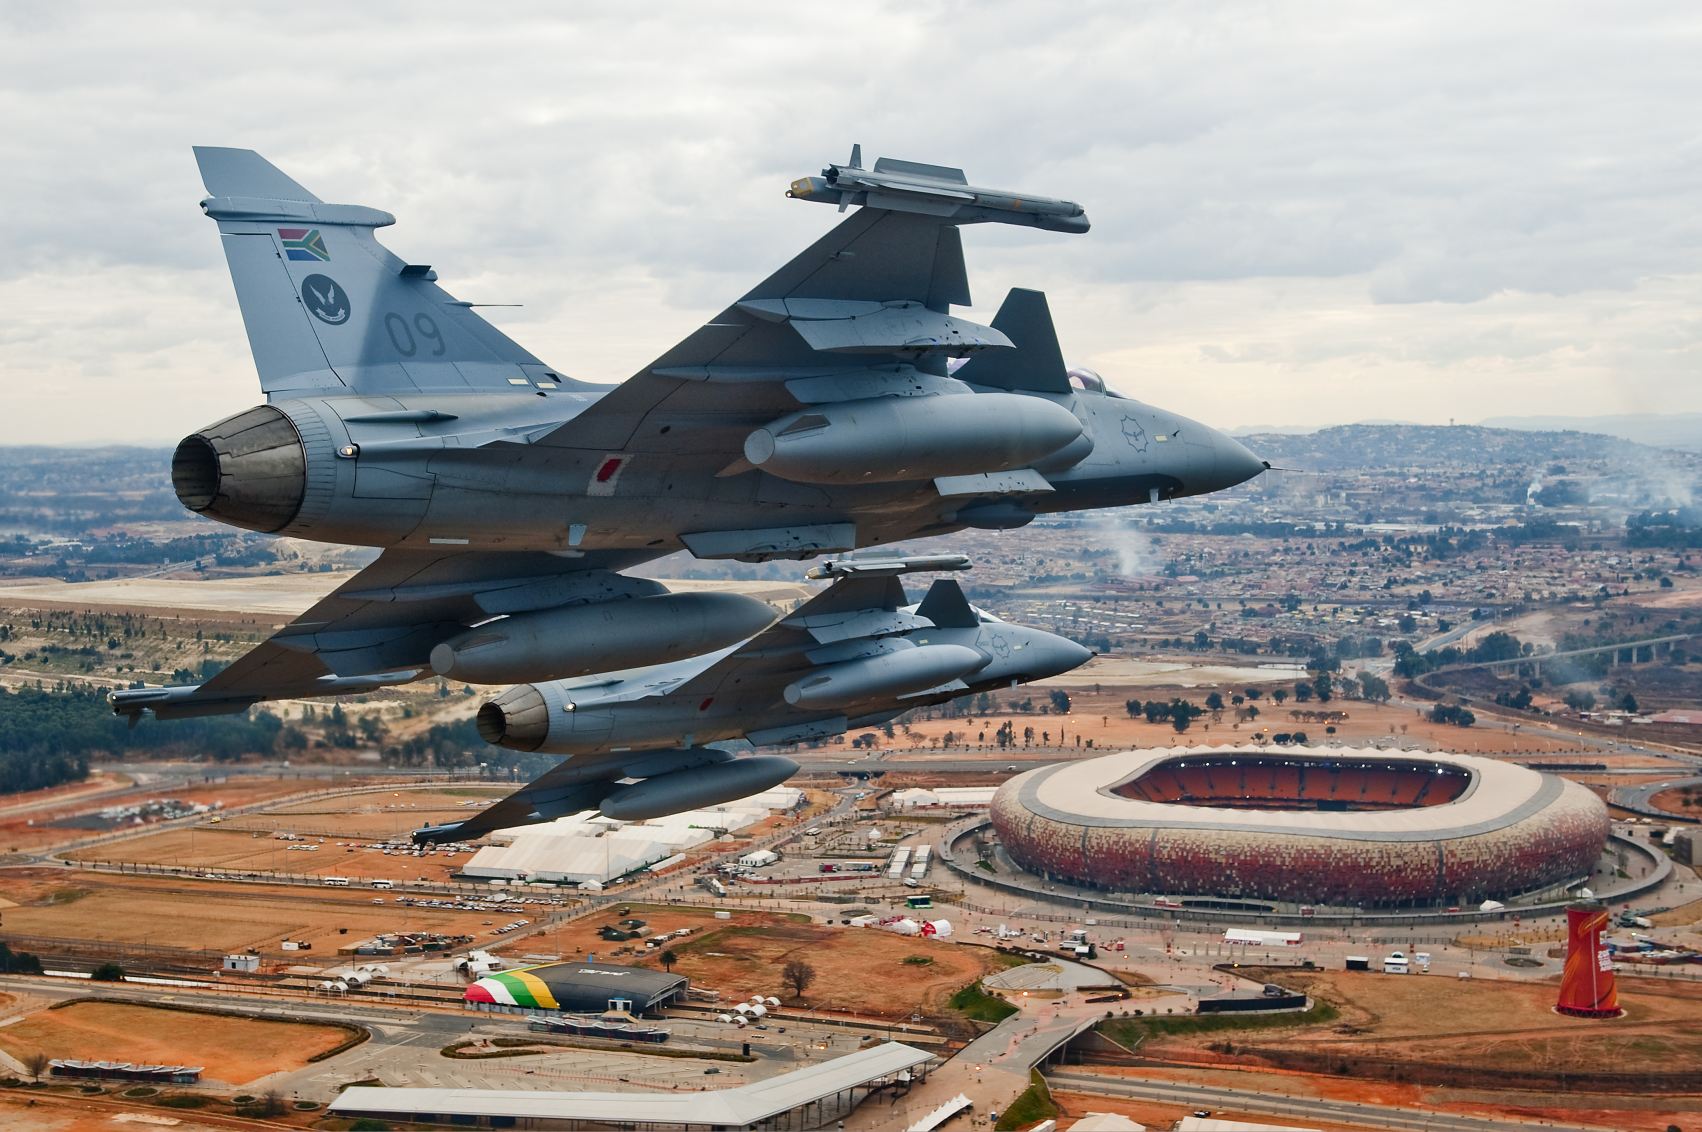 SAAF Gripen Johannesburg felett: a típus nem ismeretlen a régióban